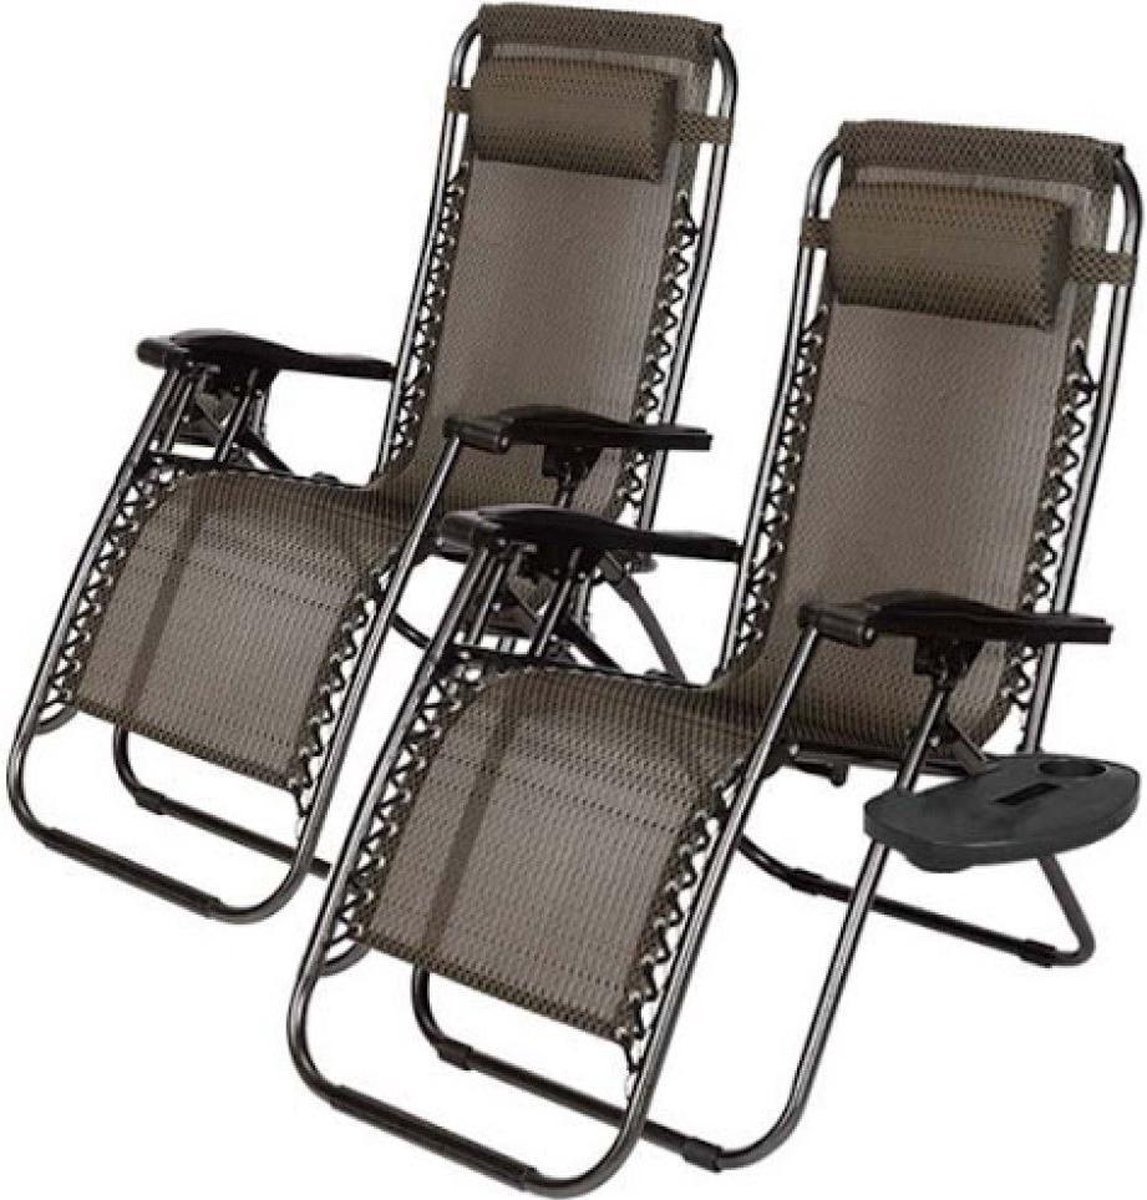 Tuinstoel - Ligstoel - Relax stoel - Zonnestoelen - Bekerhouder - Grijs - Set van 2 stuks - Strandstoel - T i m e l e s s